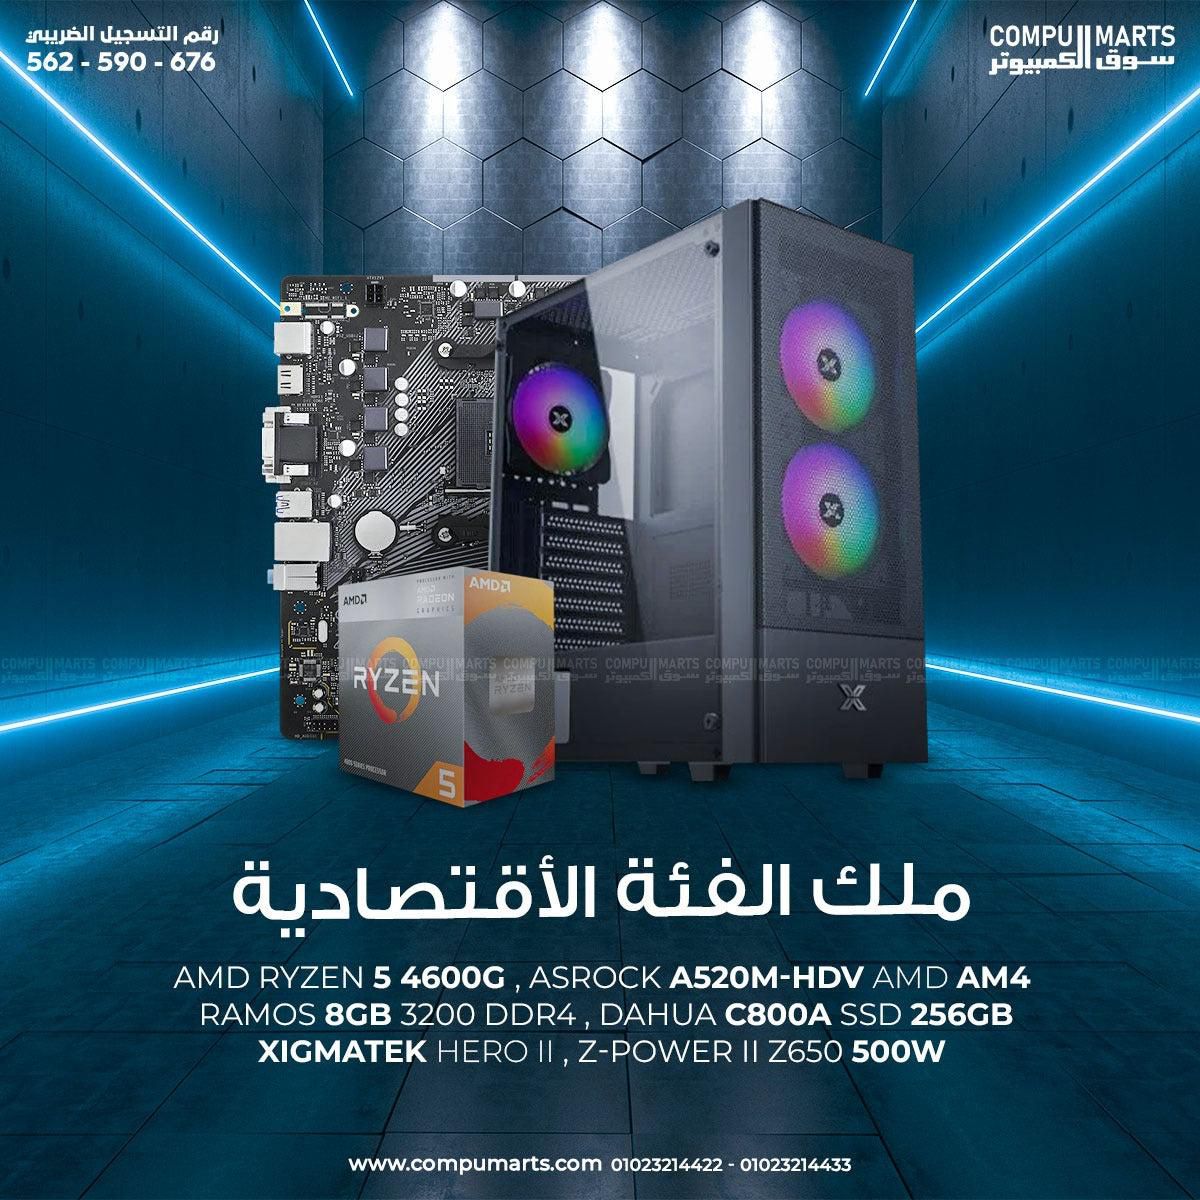 BUNDLE AMD RYZEN 5 4600G - RAMOS 8GB 3200 DDR4 - DAHUA C800A SSD 256GB